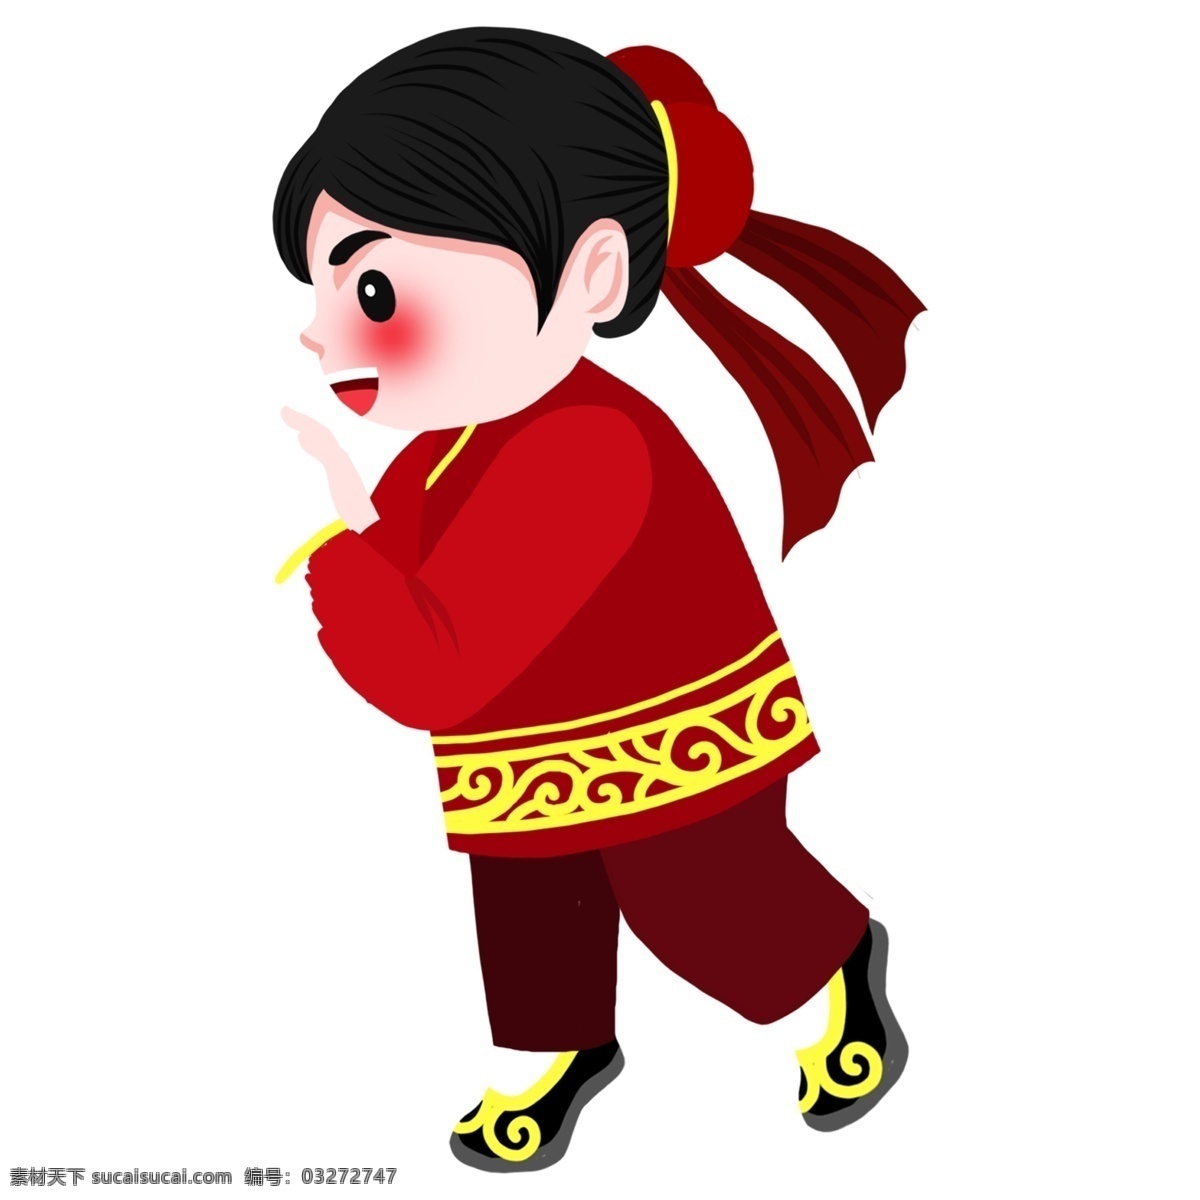 春节 庆祝 红衣 女孩 节日 元素 节日元素 装饰图案 免扣素材 中国风 人物